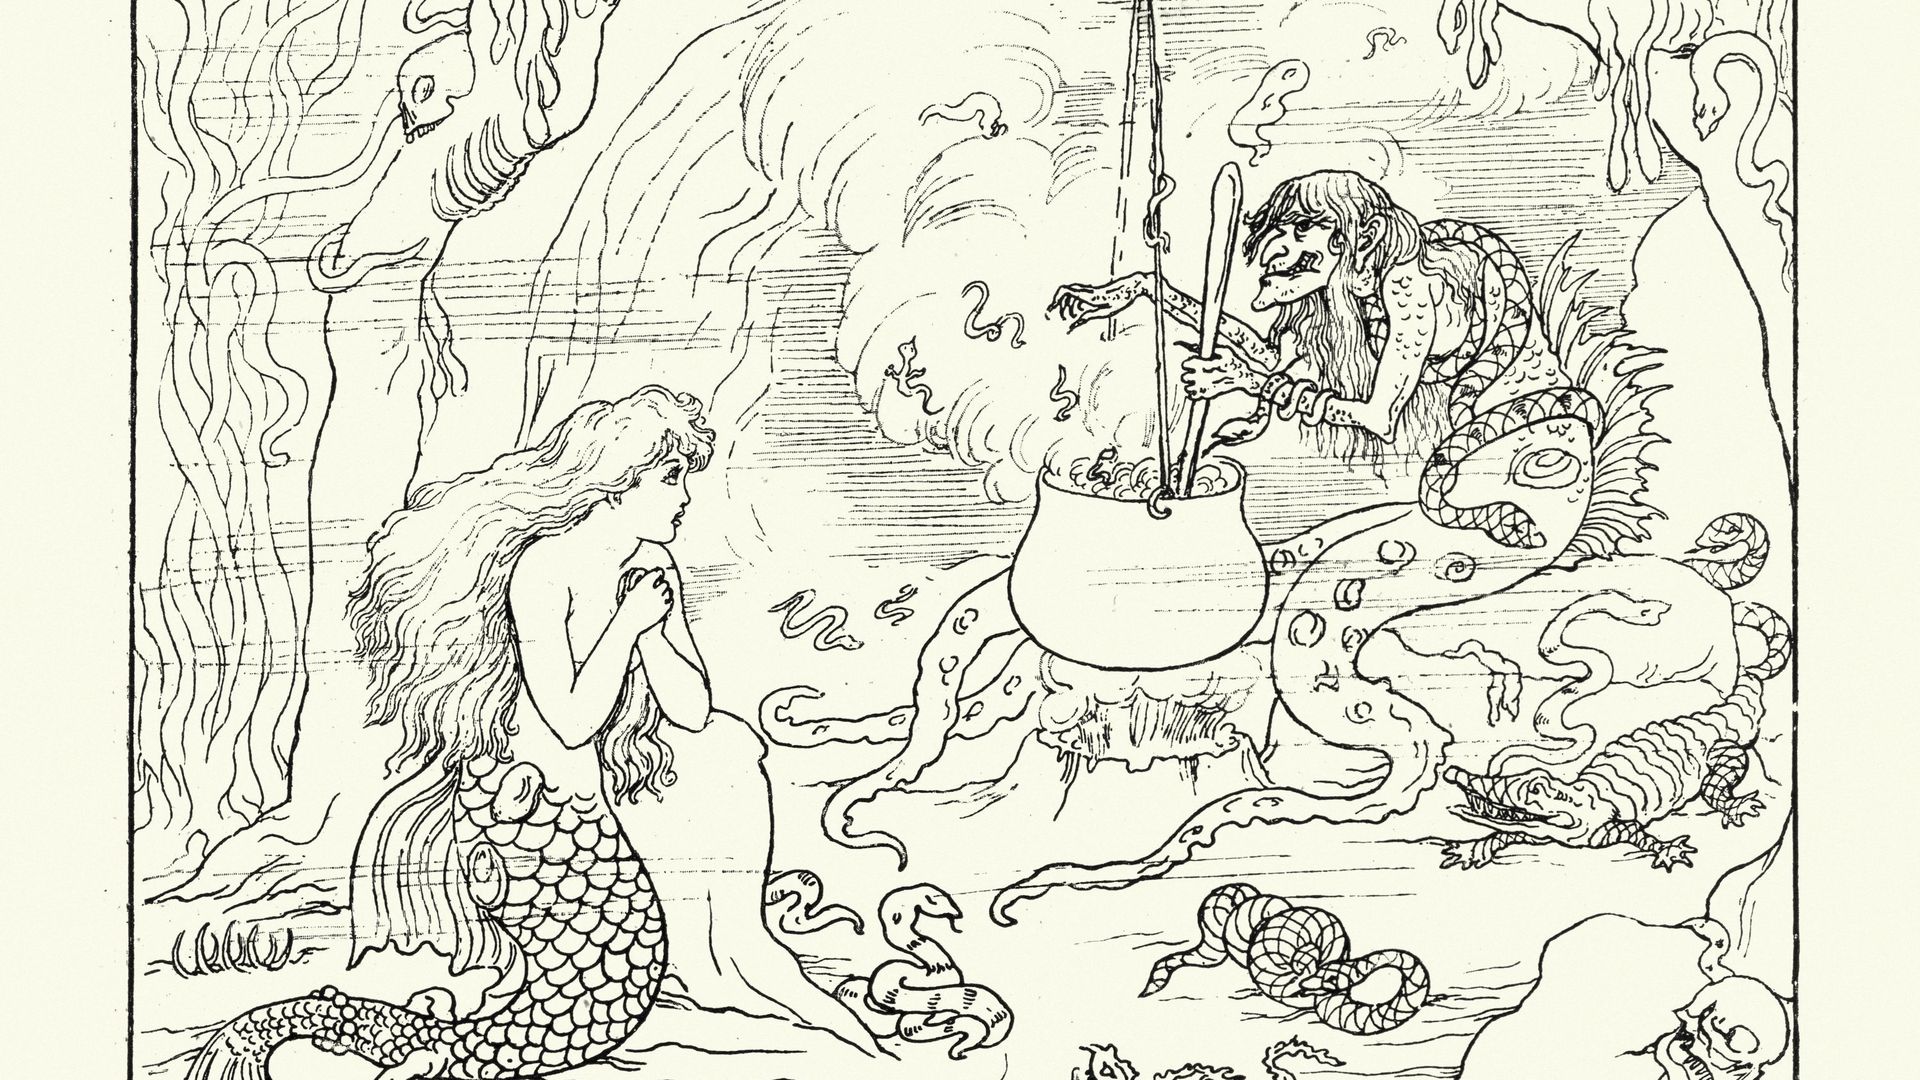 Gravure ancienne d’une scène de la Petite sirène, un conte de fées de l’auteur danois Hans Christian Andersen sur une jeune sirène prête à abandonner sa vie dans la mer et son identité de sirène pour gagner une âme humaine.